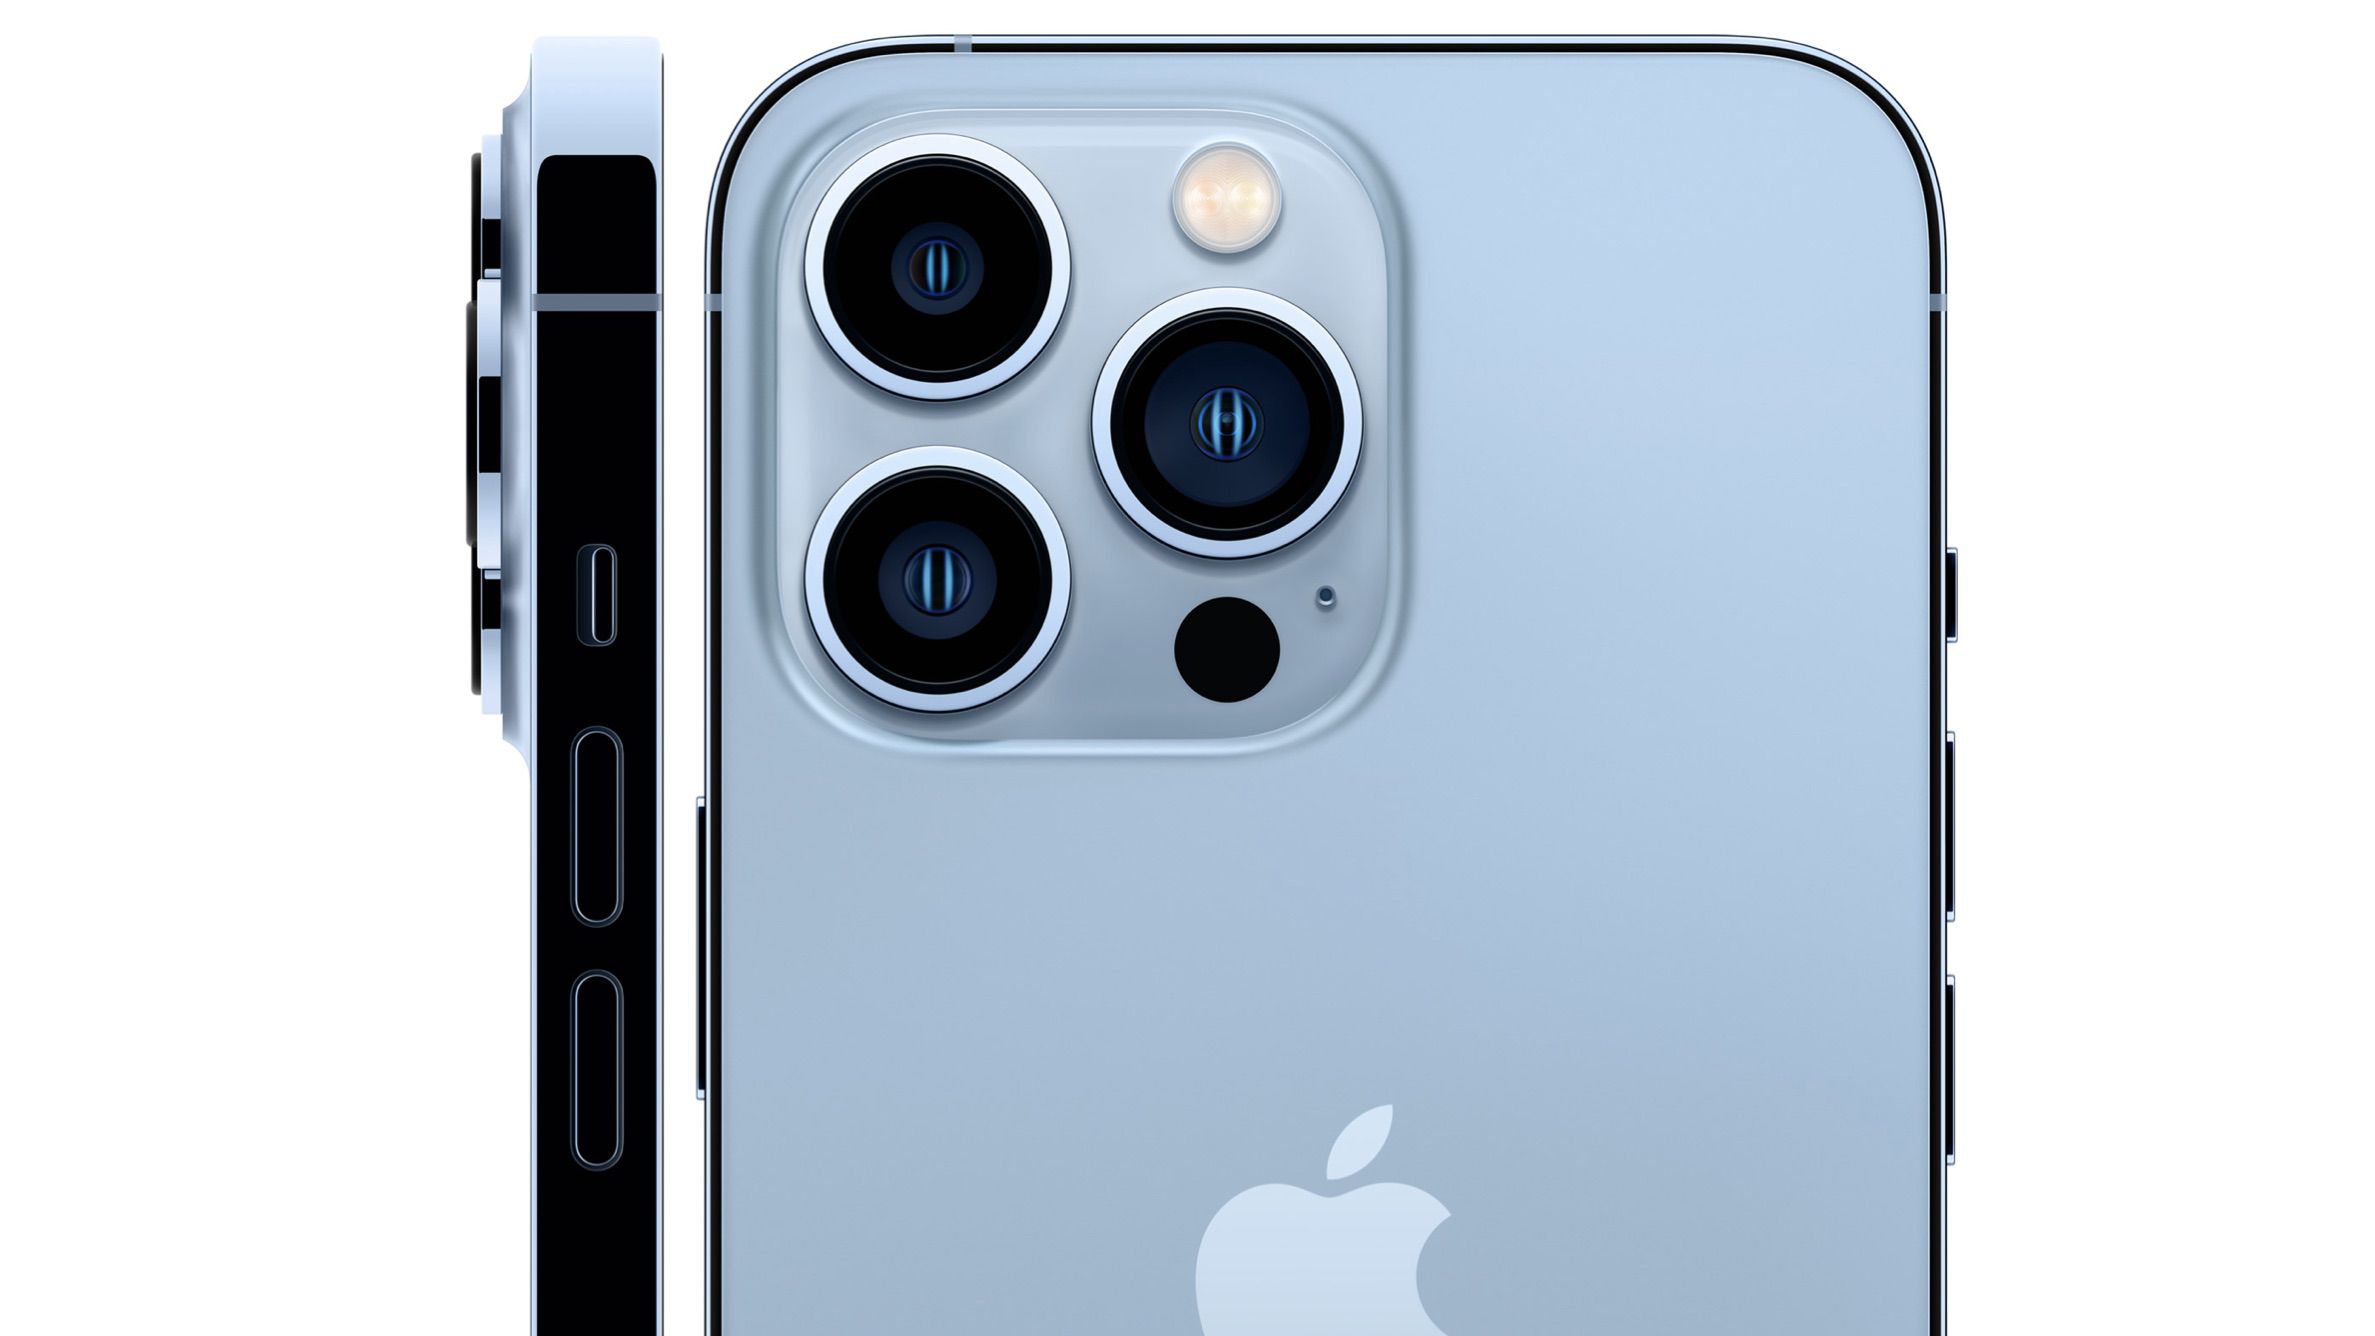 Tính năng camera iPhone 13 mới sẽ làm nổi bật những bức ảnh của bạn với sự độc đáo và sắc nét. Hãy tìm hiểu mọi tính năng vượt trội của chiếc điện thoại này và chiêm ngưỡng cảm giác khác biệt khi sử dụng.